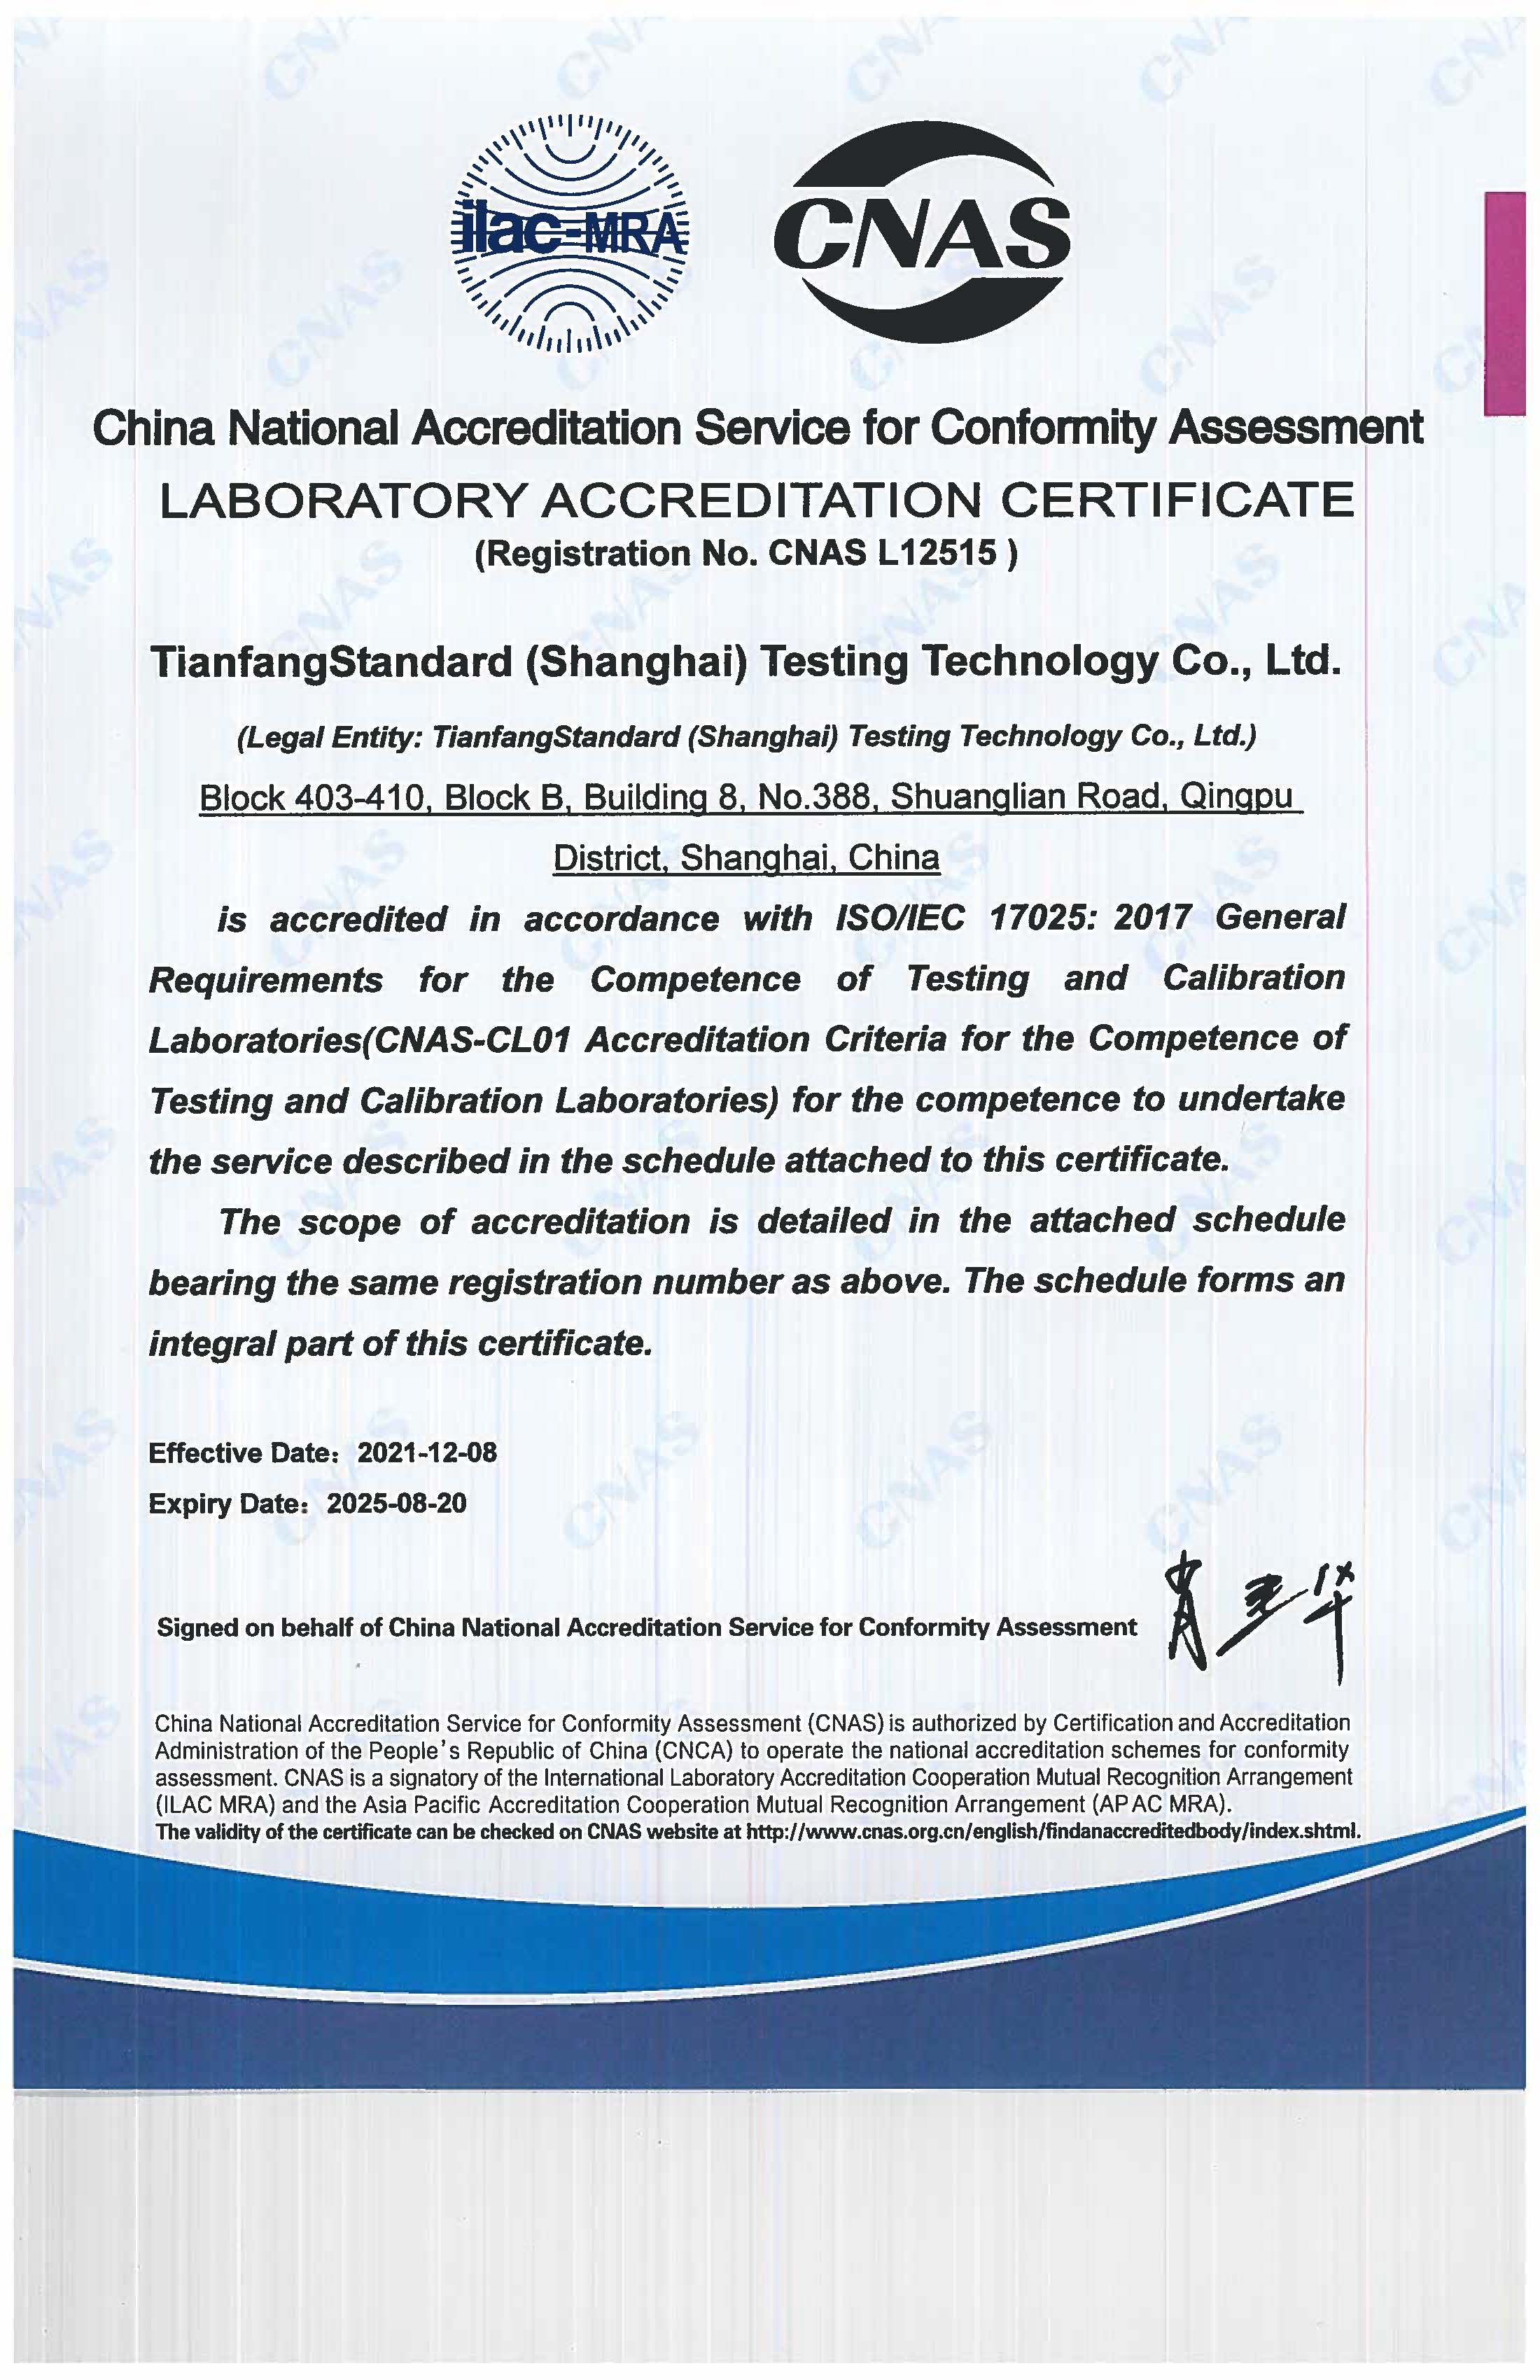 天纺标（上海）检测科技有限公司CNAS 证书_页面_2.jpg